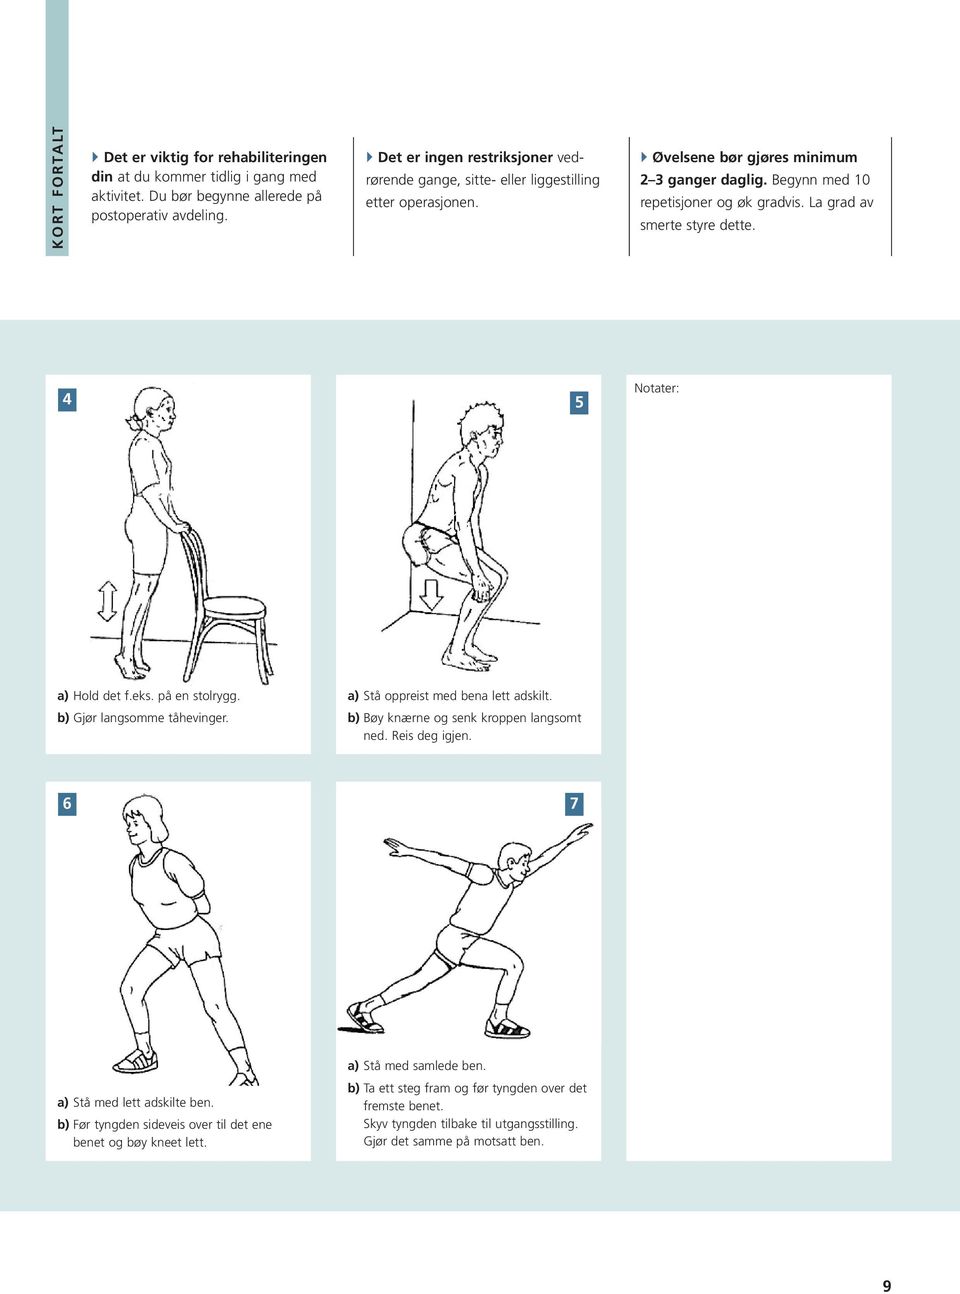 La grad av smerte styre dette. 4 5 Notater: a) Hold det f.eks. på en stolrygg. b) Gjør langsomme tåhevinger. a) Stå oppreist med bena lett adskilt. b) Bøy knærne og senk kroppen langsomt ned.